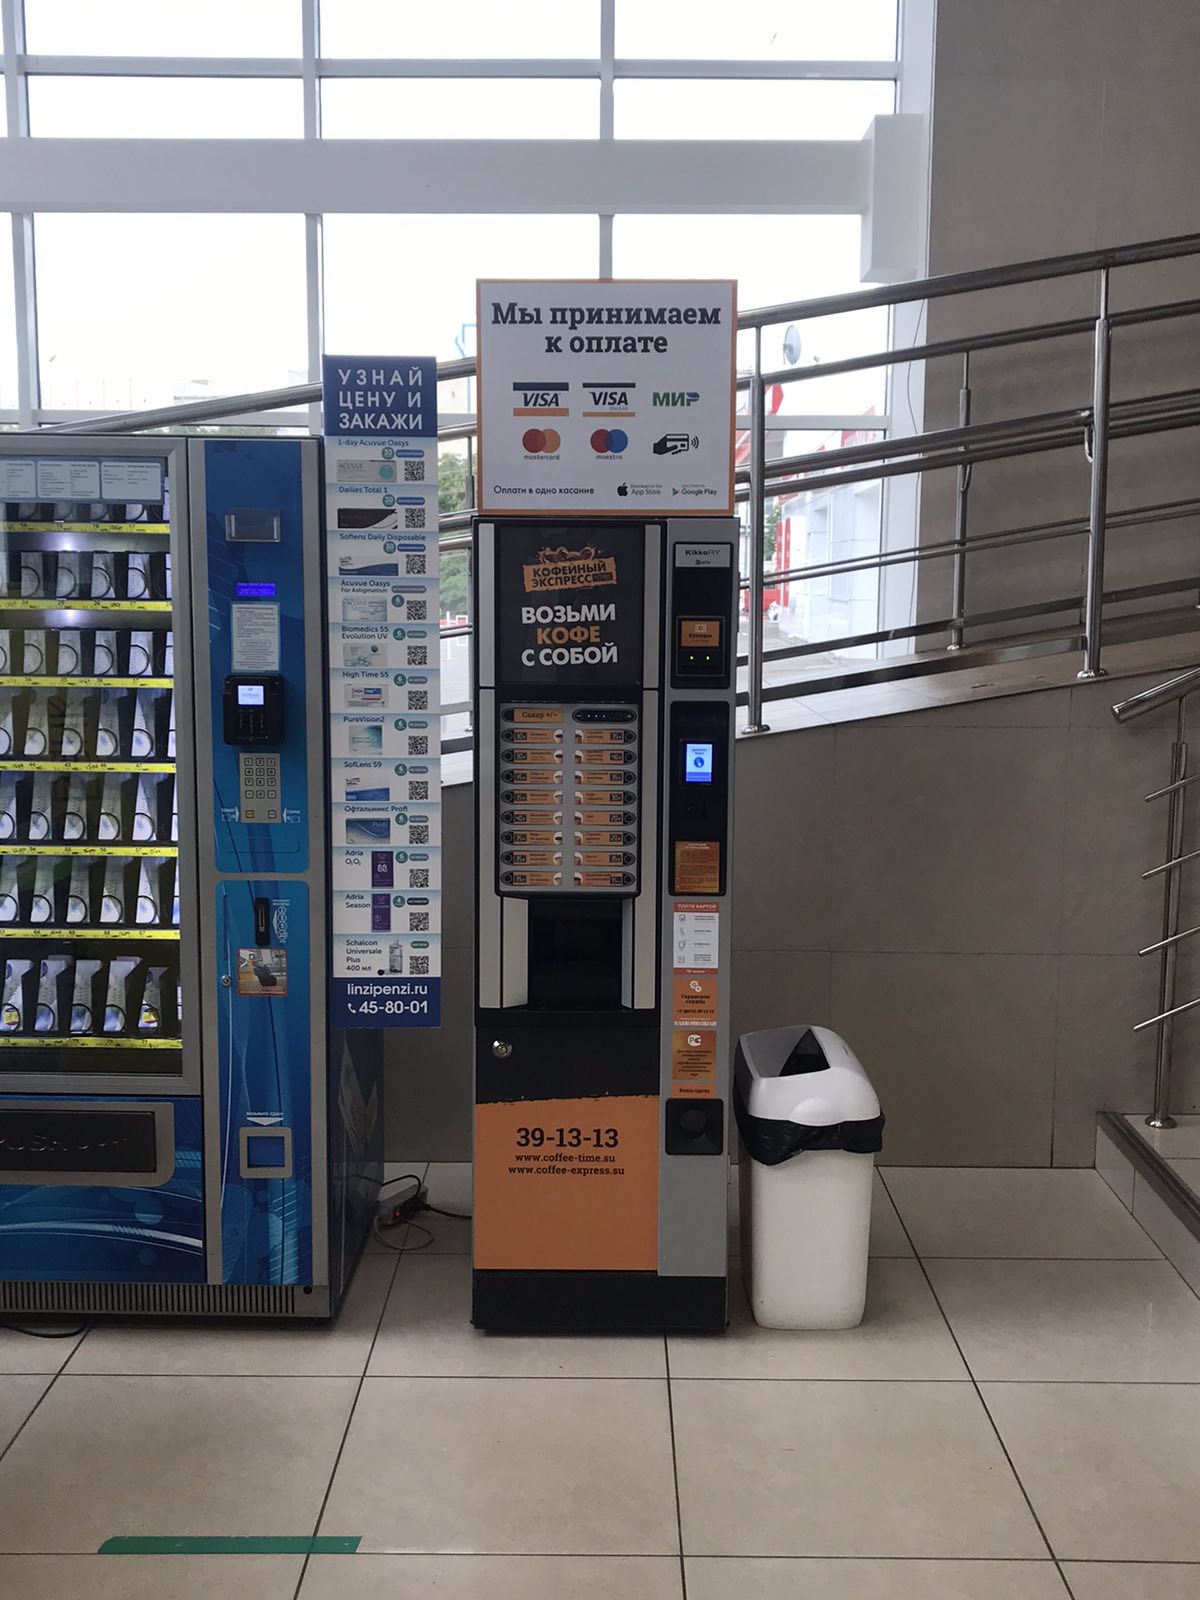 Наш автомат в ТЦ "Суворовский" теперь принимает к оплате карты.